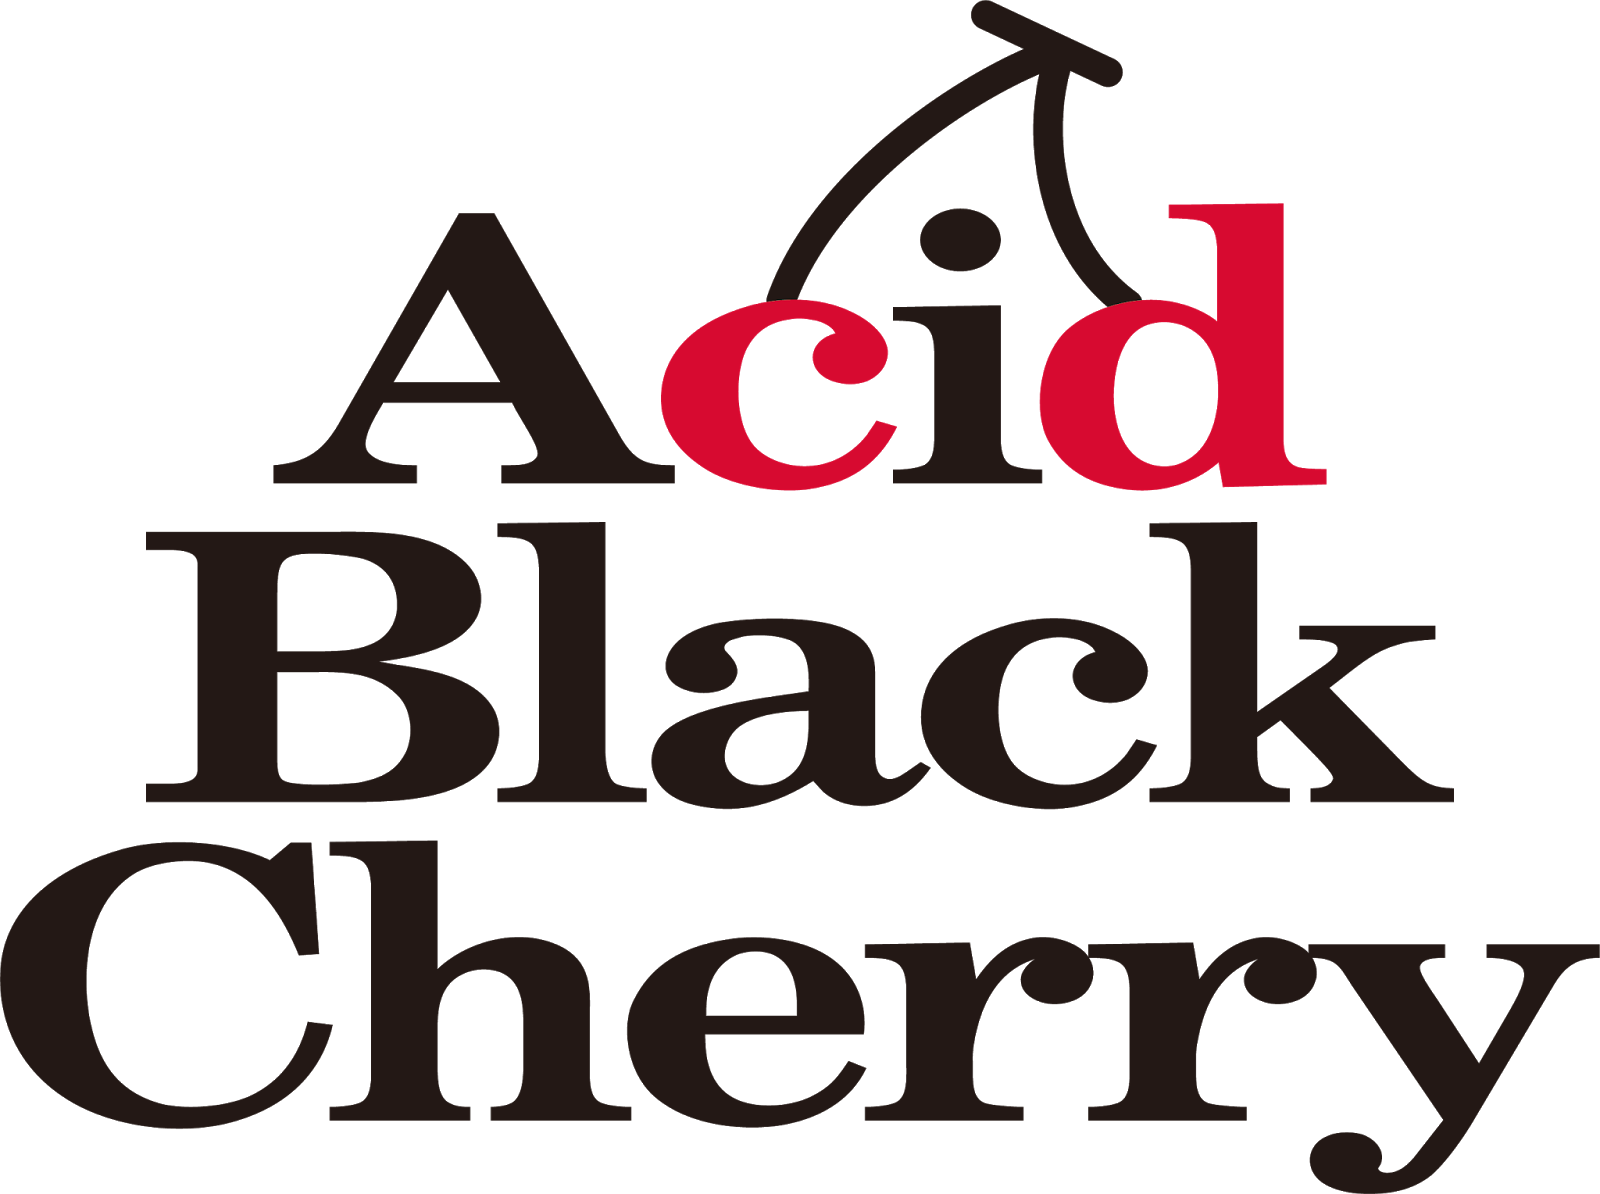 心に強く訴えるロゴ Acid Black Cherry 壁紙 最高の花の画像